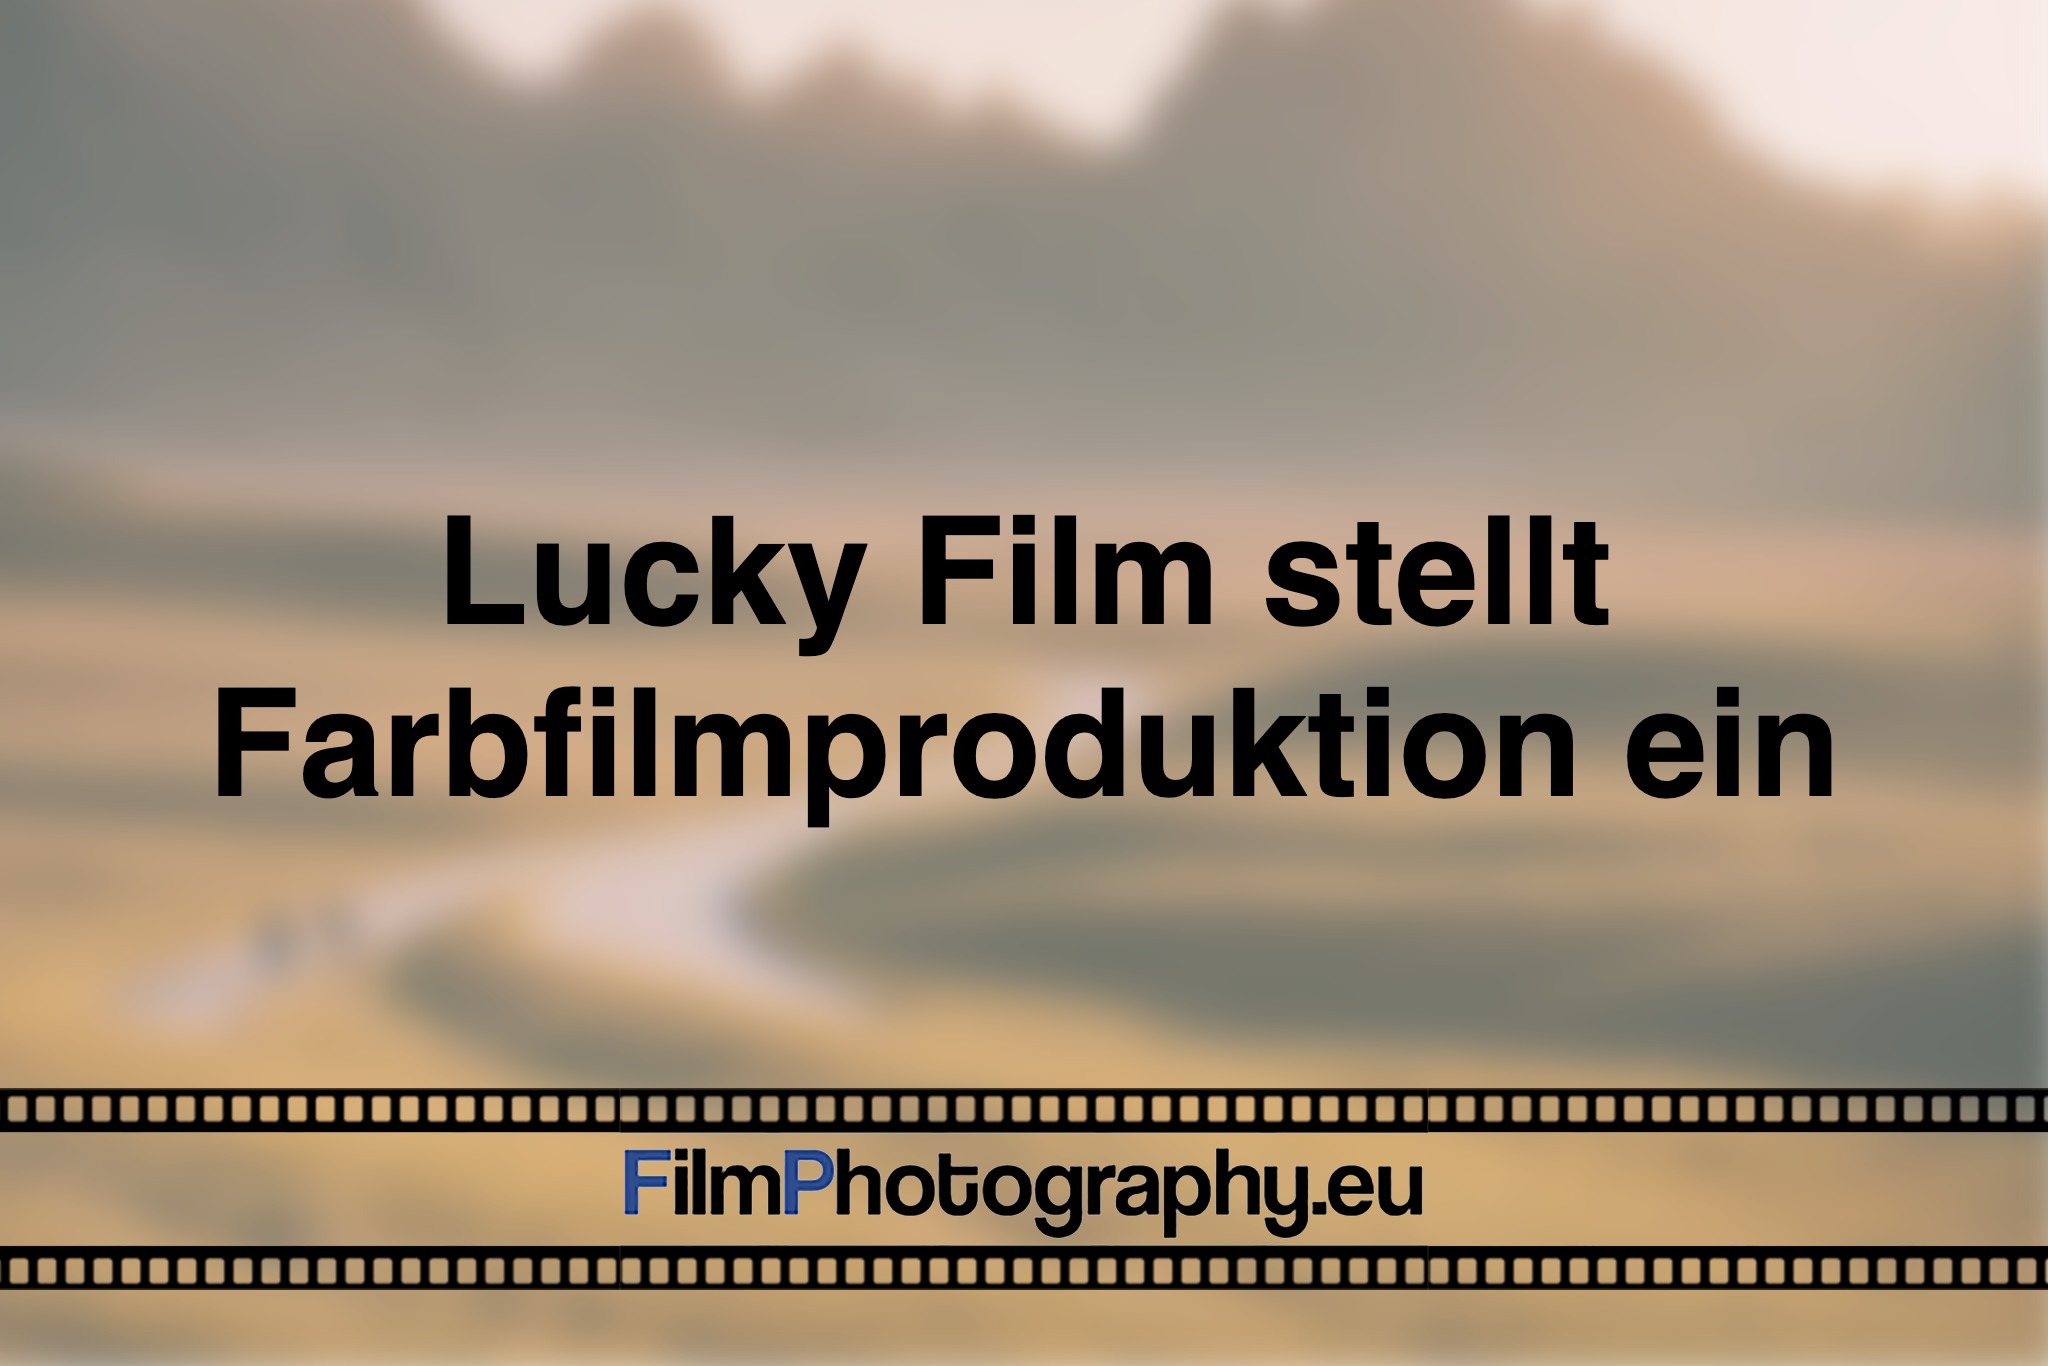 lucky-film-stellt-farbfilmproduktion-ein-photo-bnv